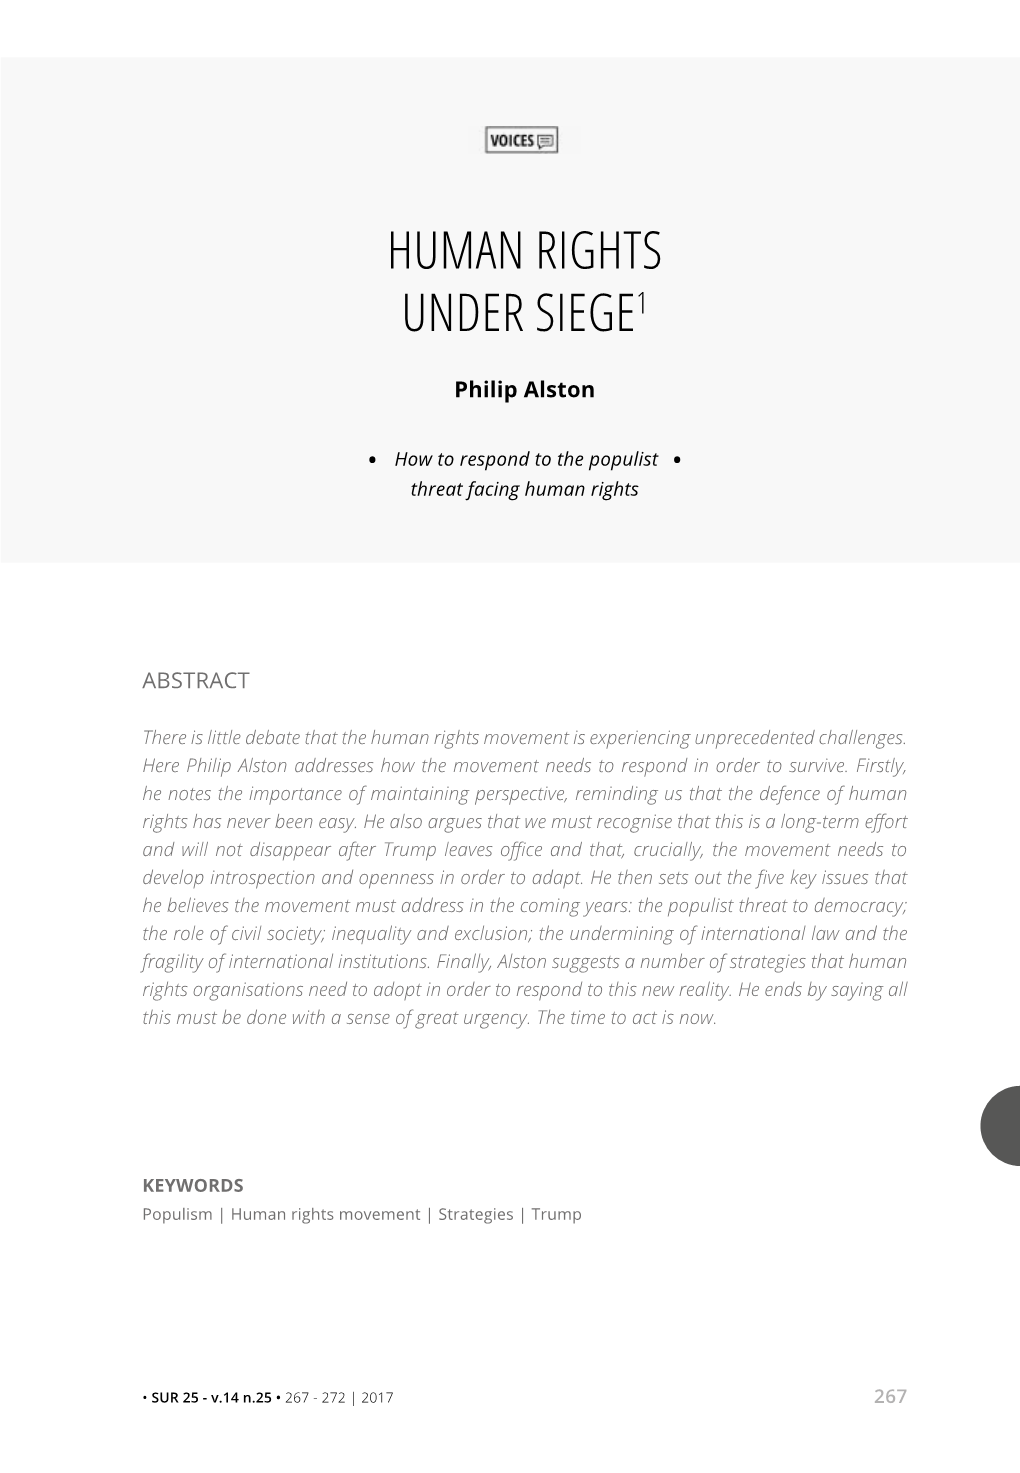 Human Rights Under Siege1